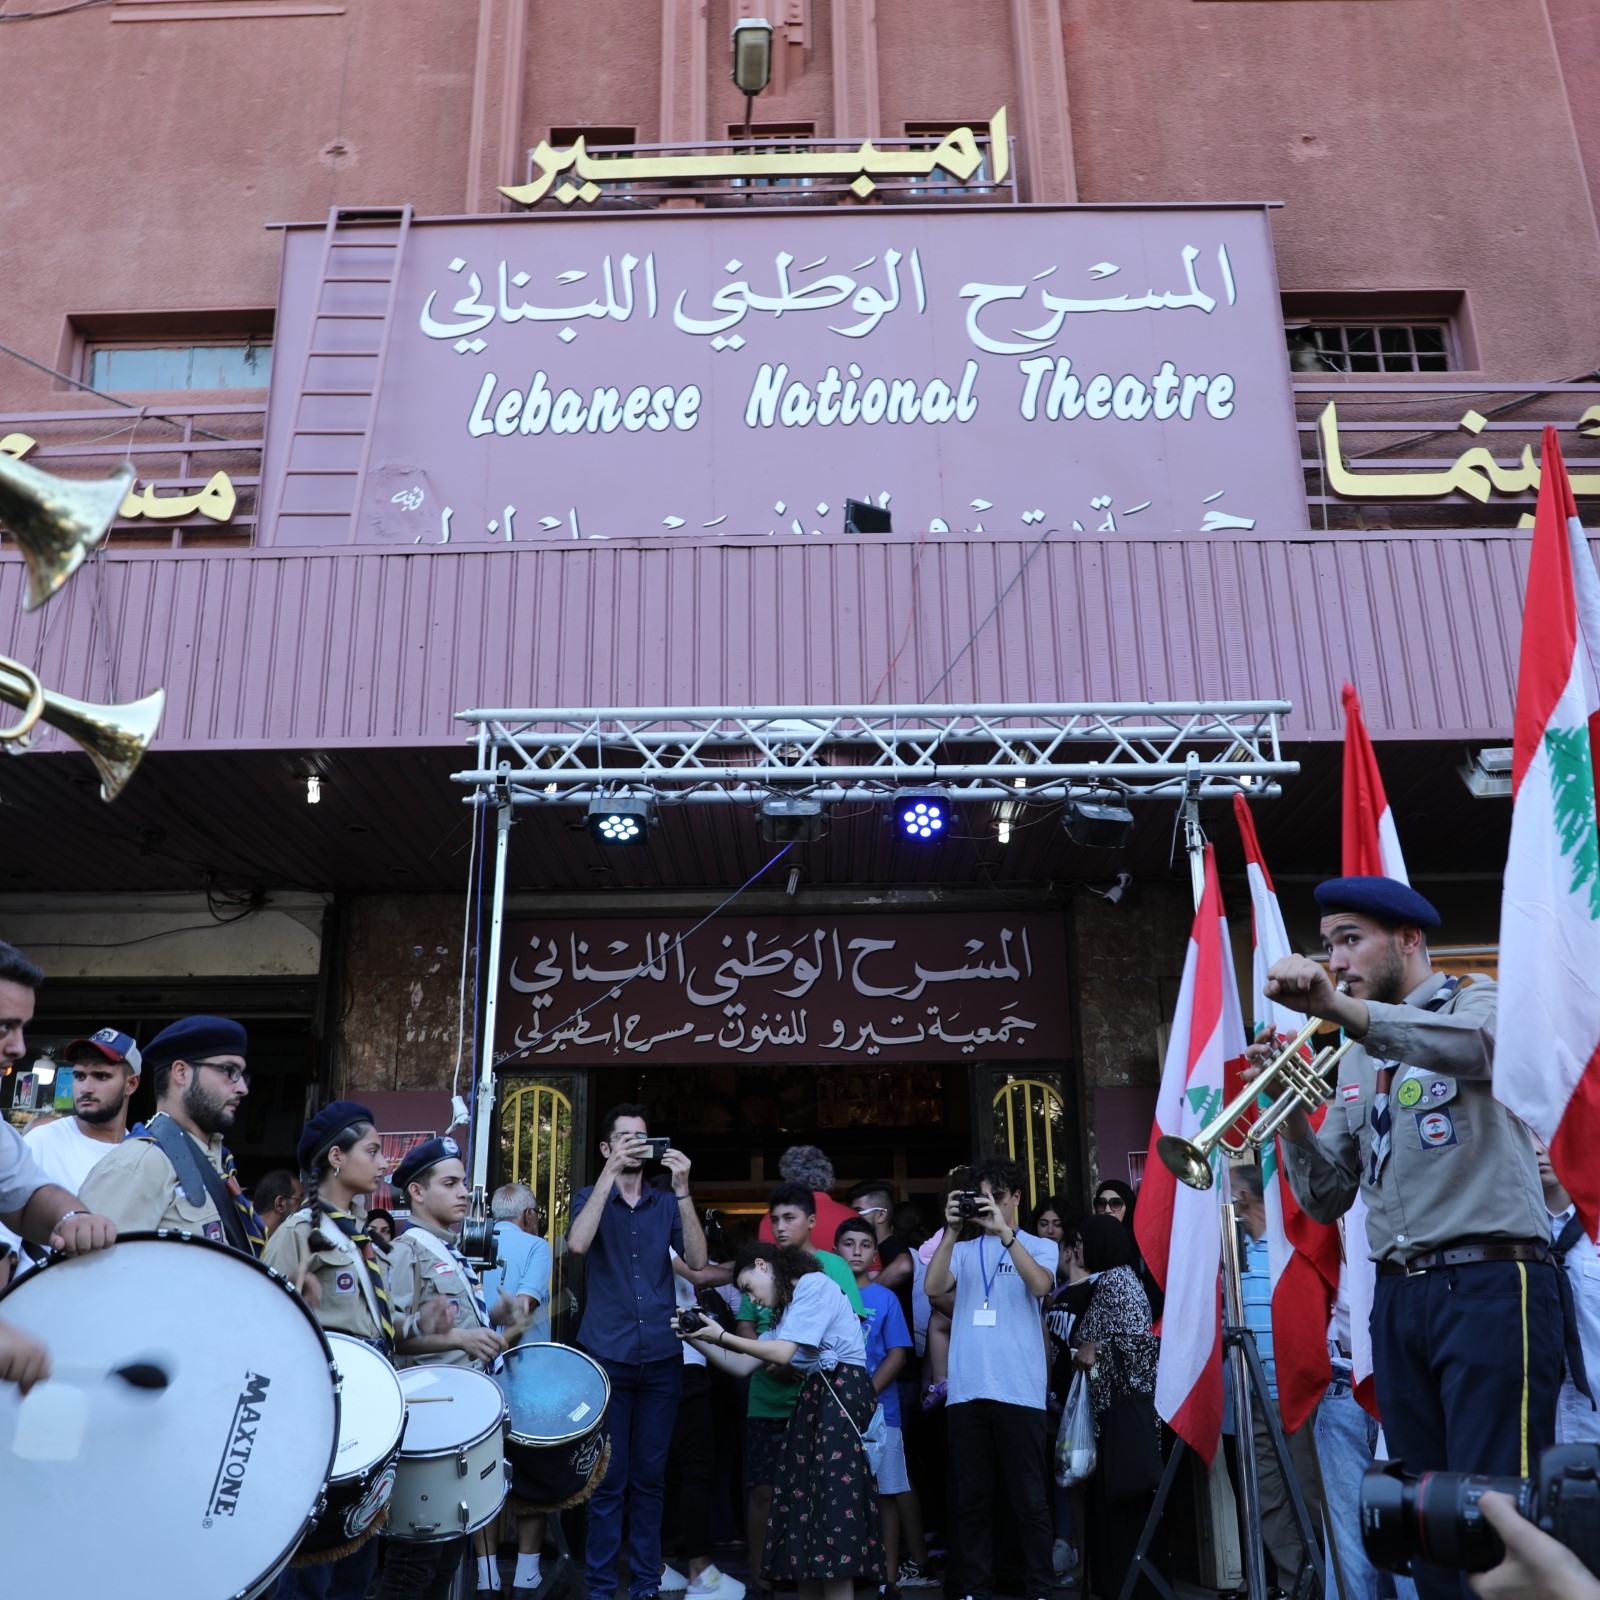 المسرح الوطنيّ اللّبنانيّ في طرابلس